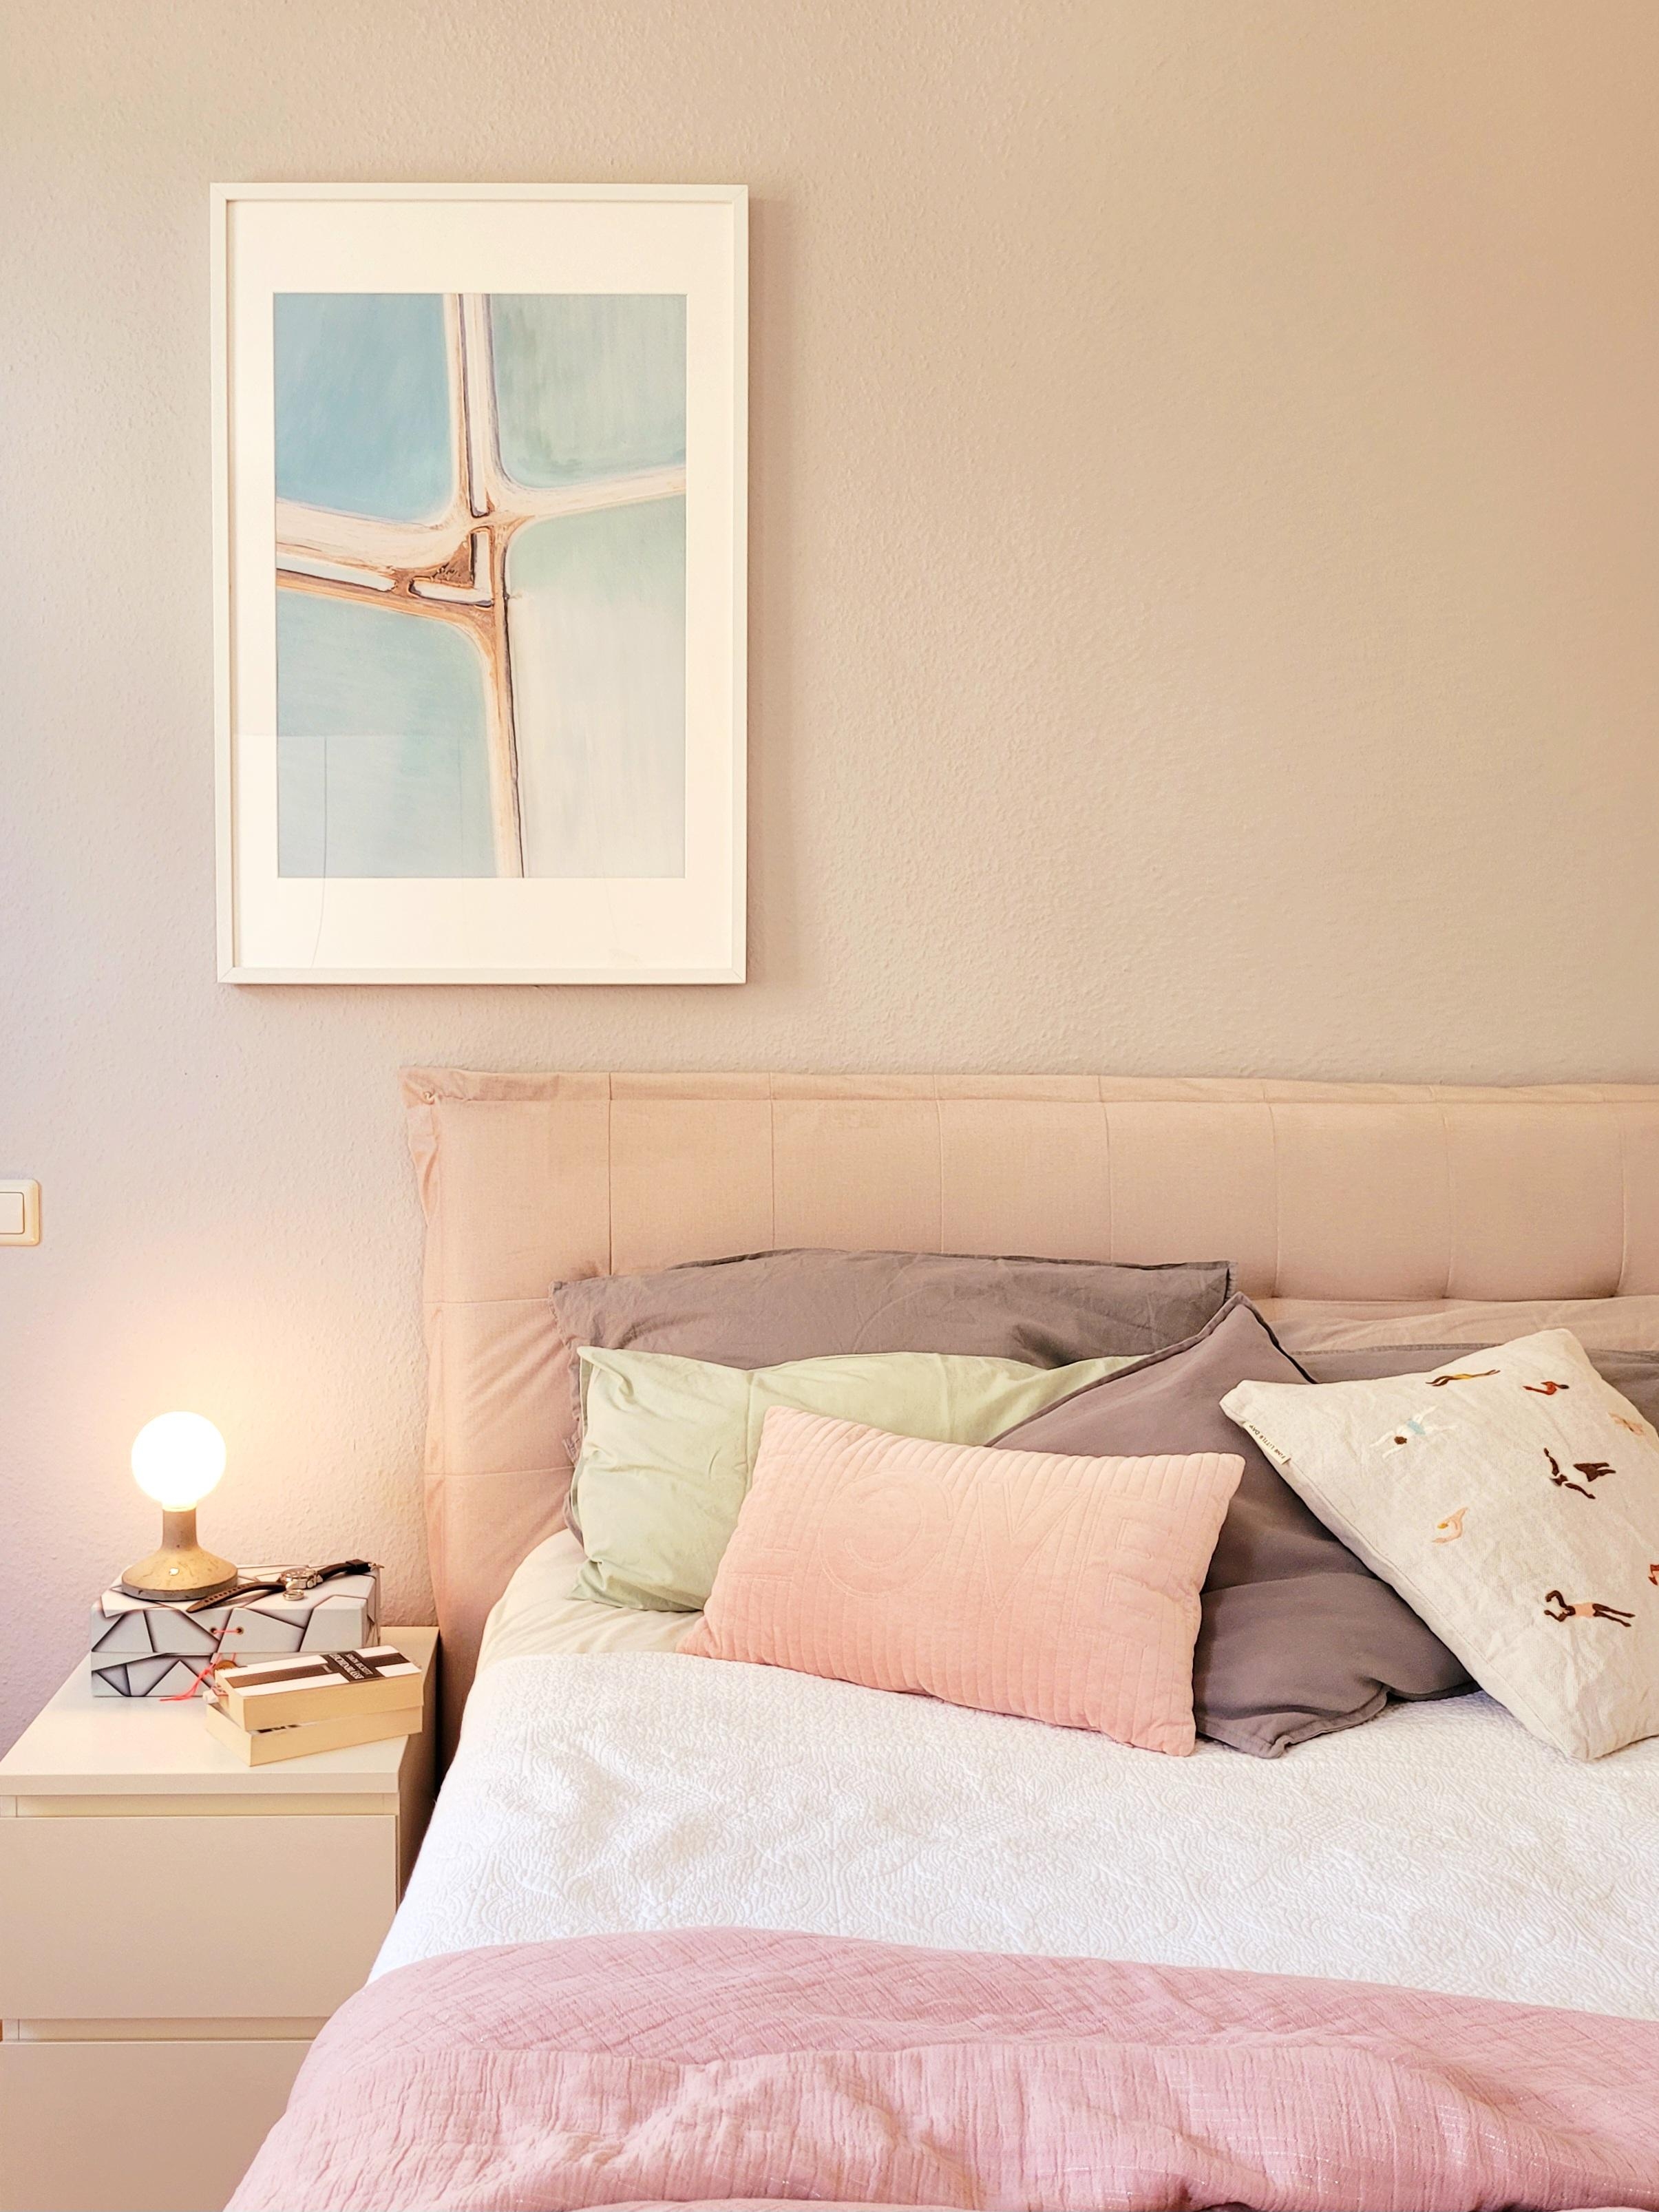 #Altbau #Schlafzimmer #Pastellfarben #Bild #Kissen
#gemütlich #Lampe #Nachttisch #ikea 